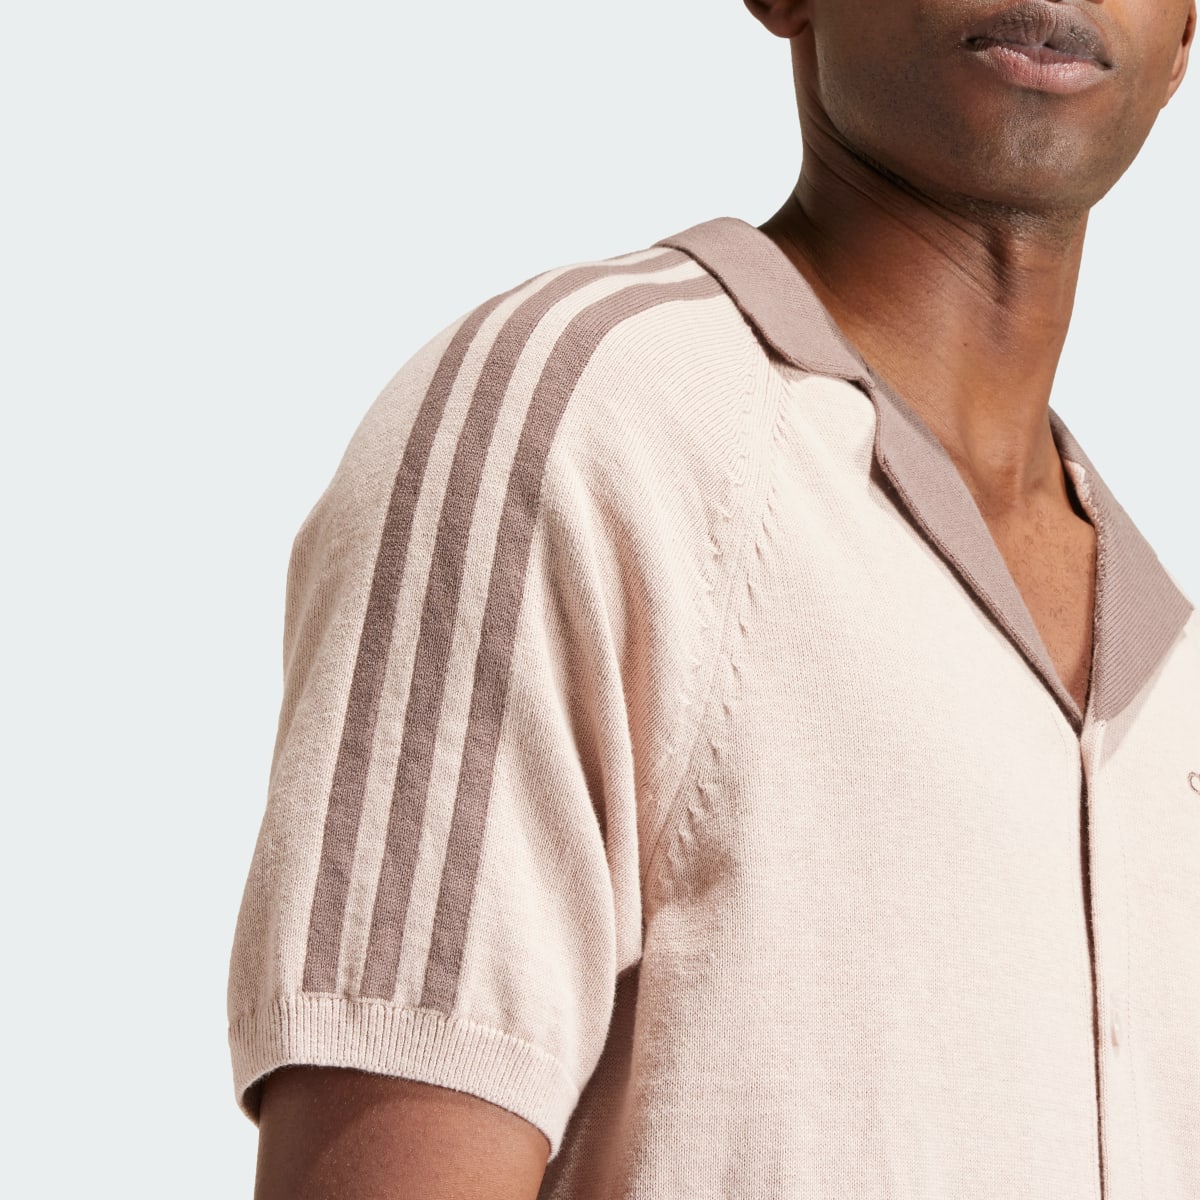 Adidas Premium Knitted Shirt. 6